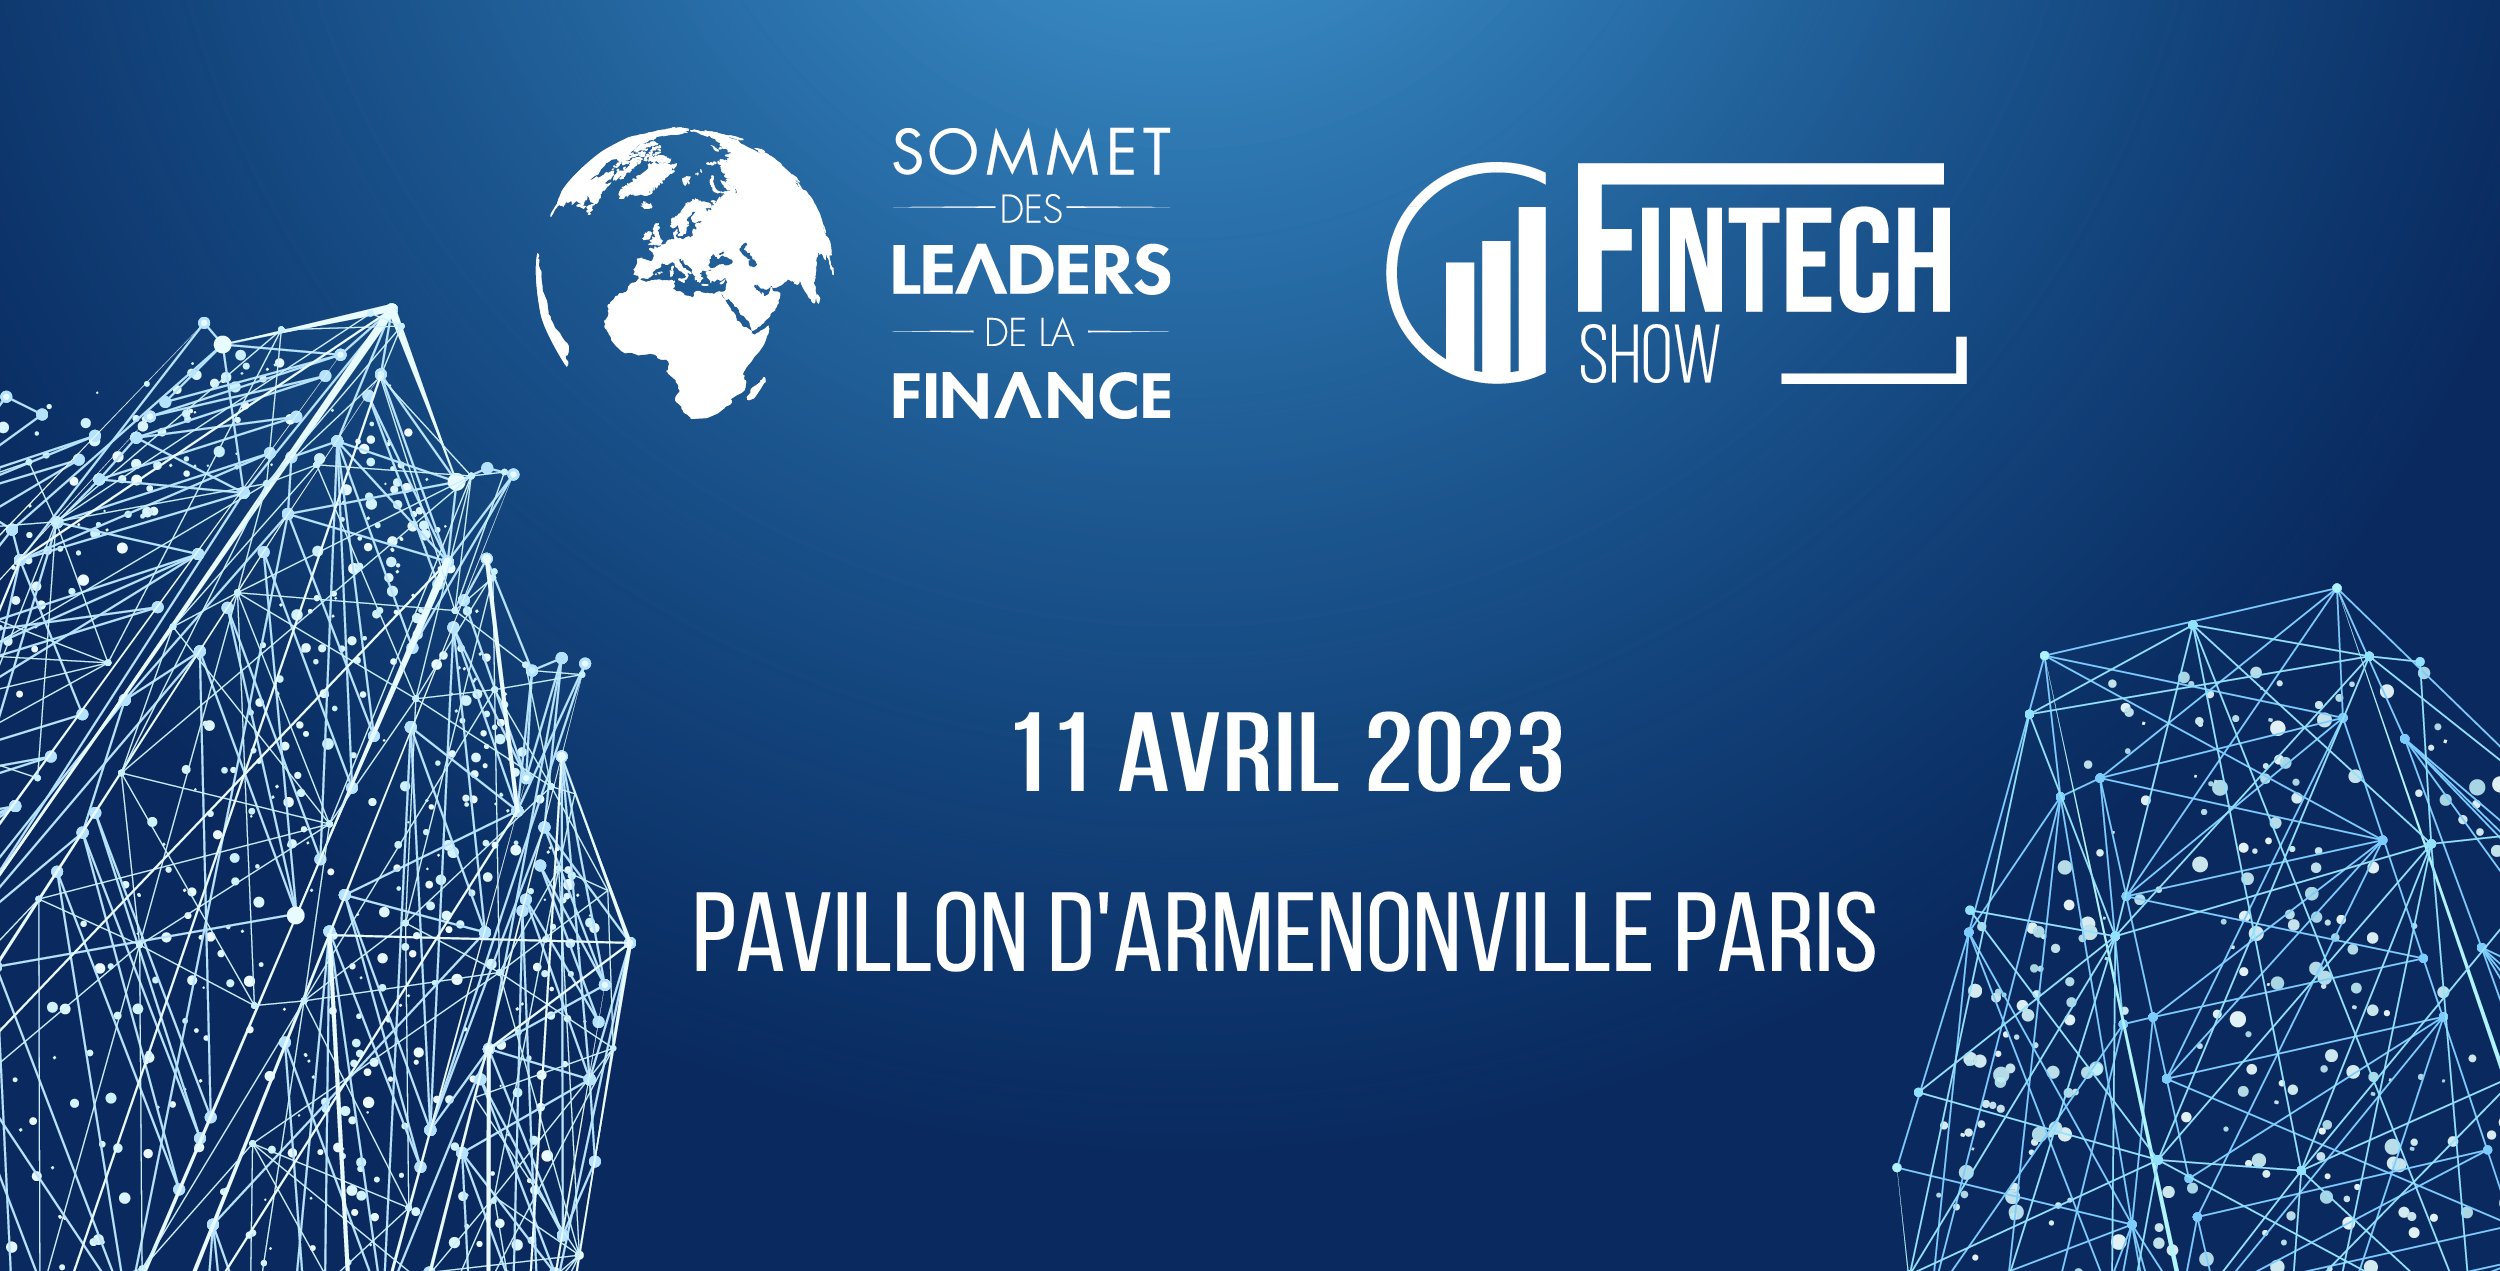 Affiche annonçant le Sommet des Leaders de la Finance le 11 avril 2023 